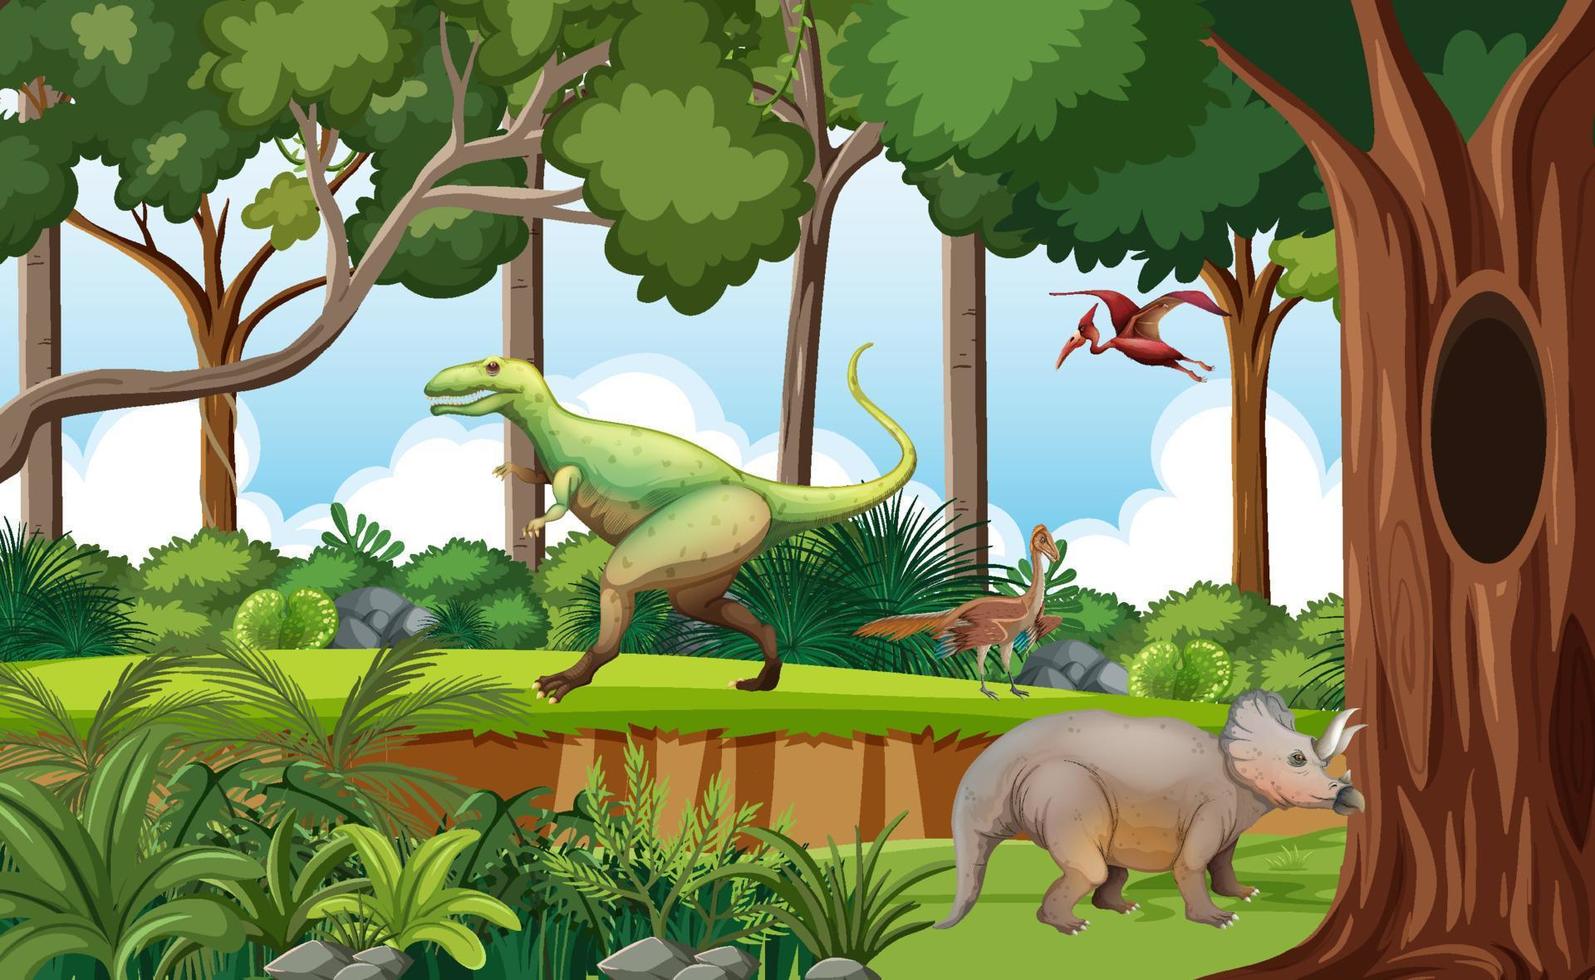 bosque prehistórico con dibujos animados de dinosaurios vector